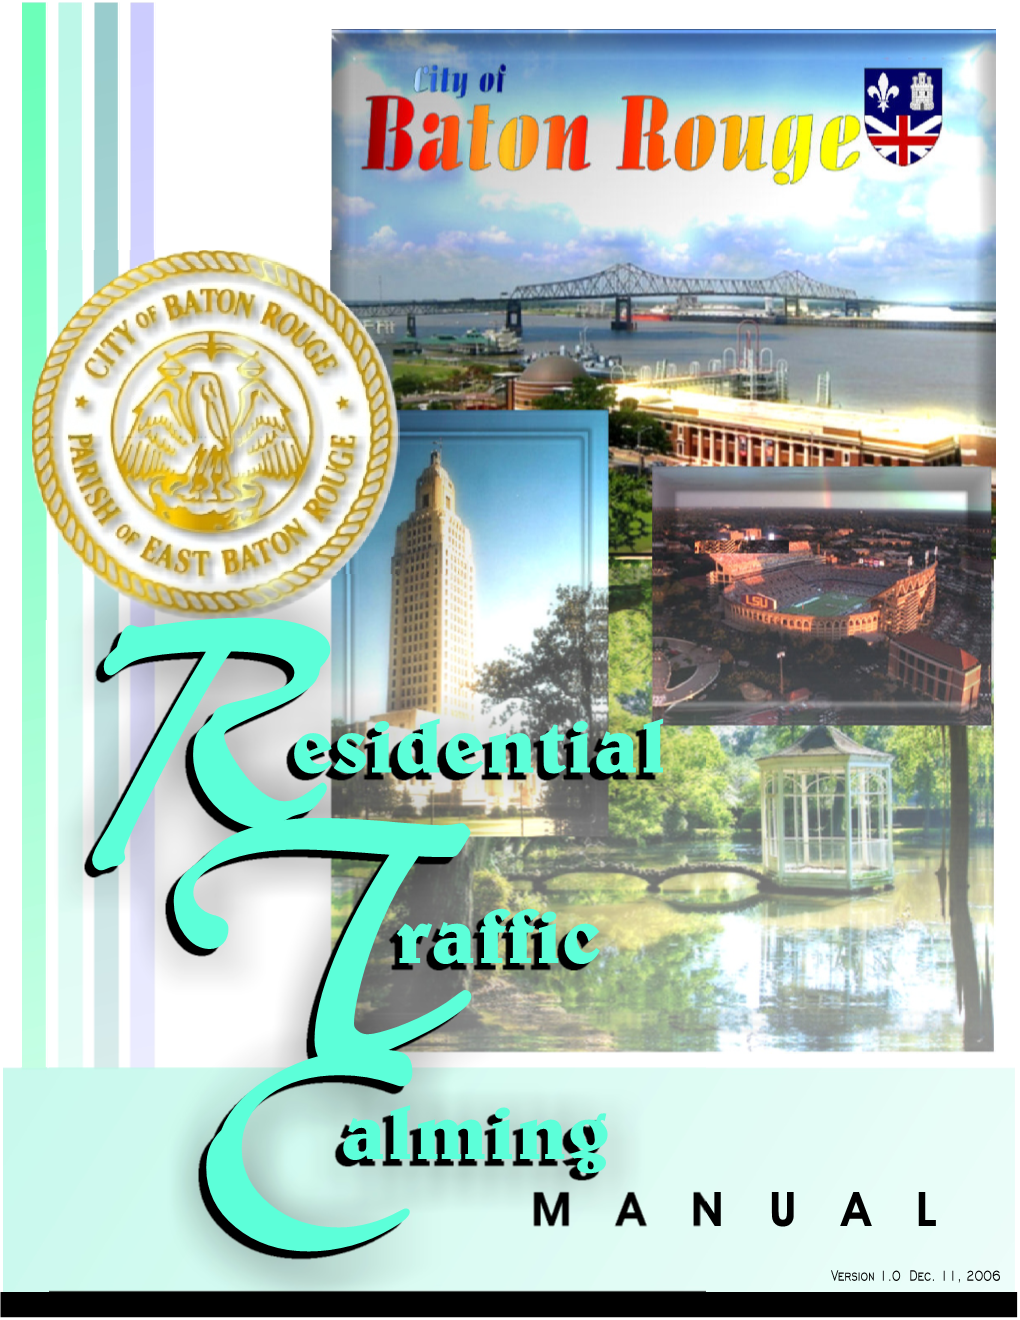 Baton Rouge Residential Traffic Calming Initiative Manual